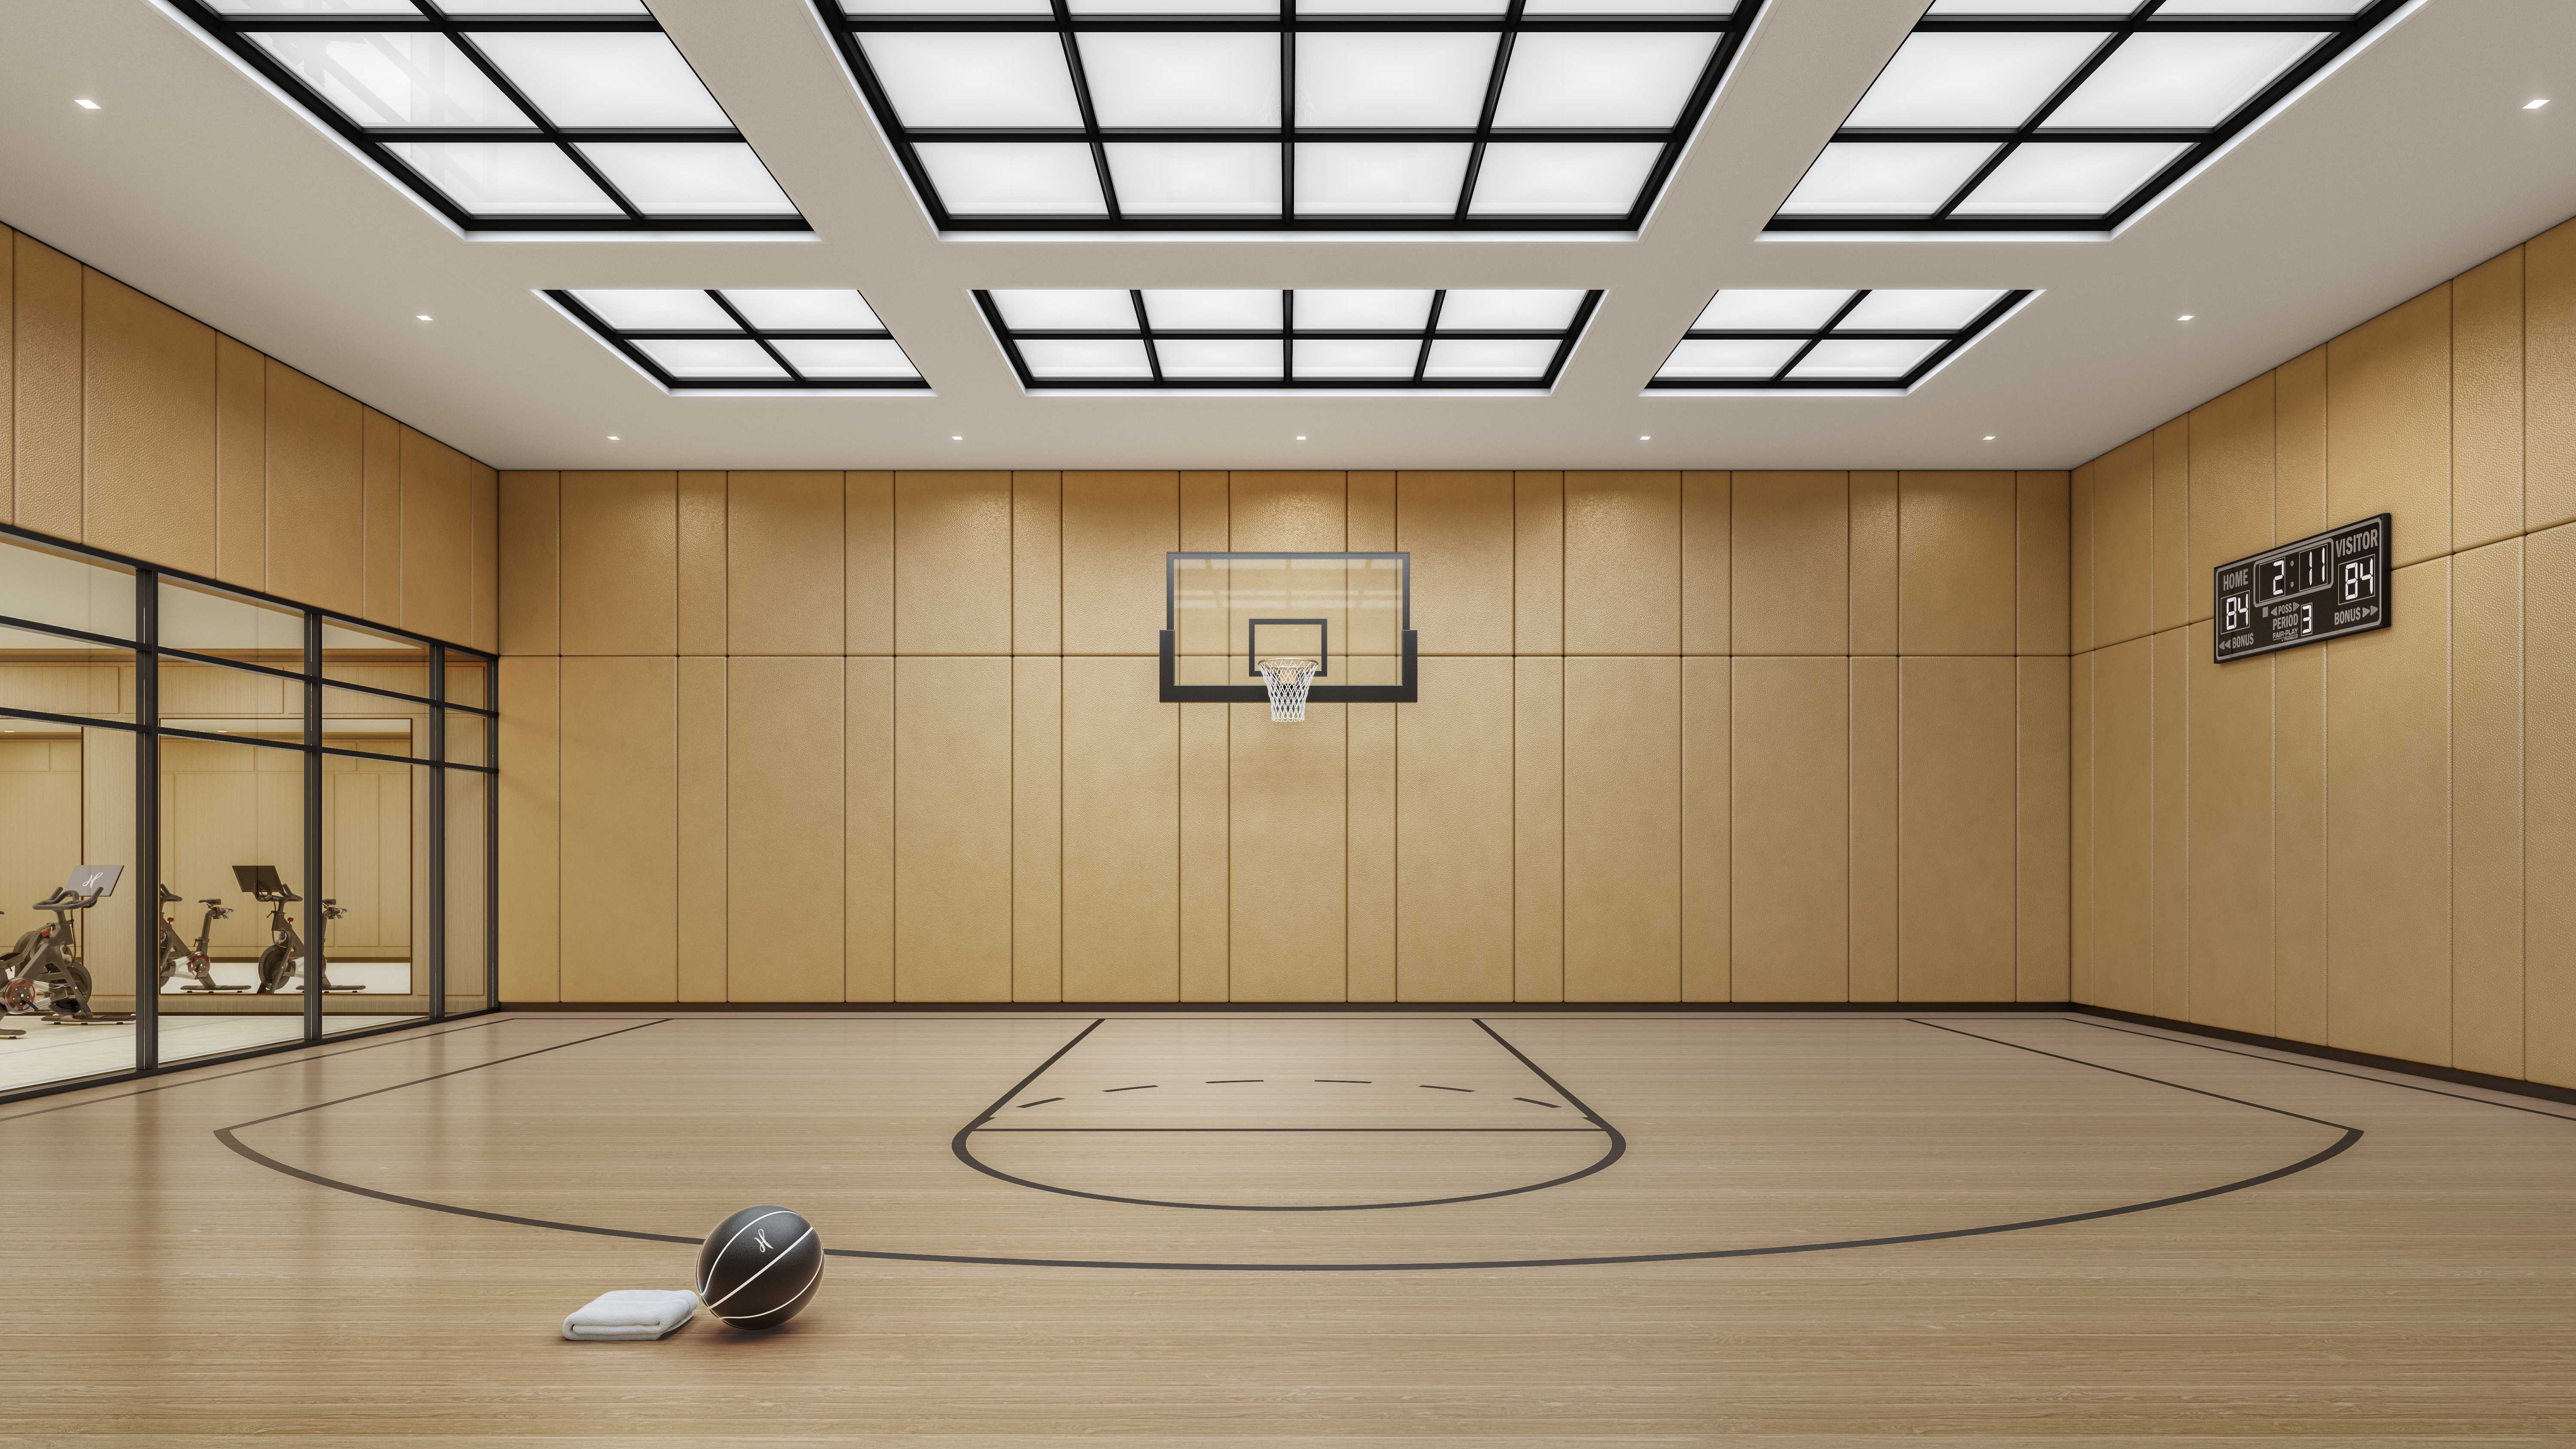 DBOX_Naftali_TheHenry_Amenity_Cellar_Gym_Basketball.jpg